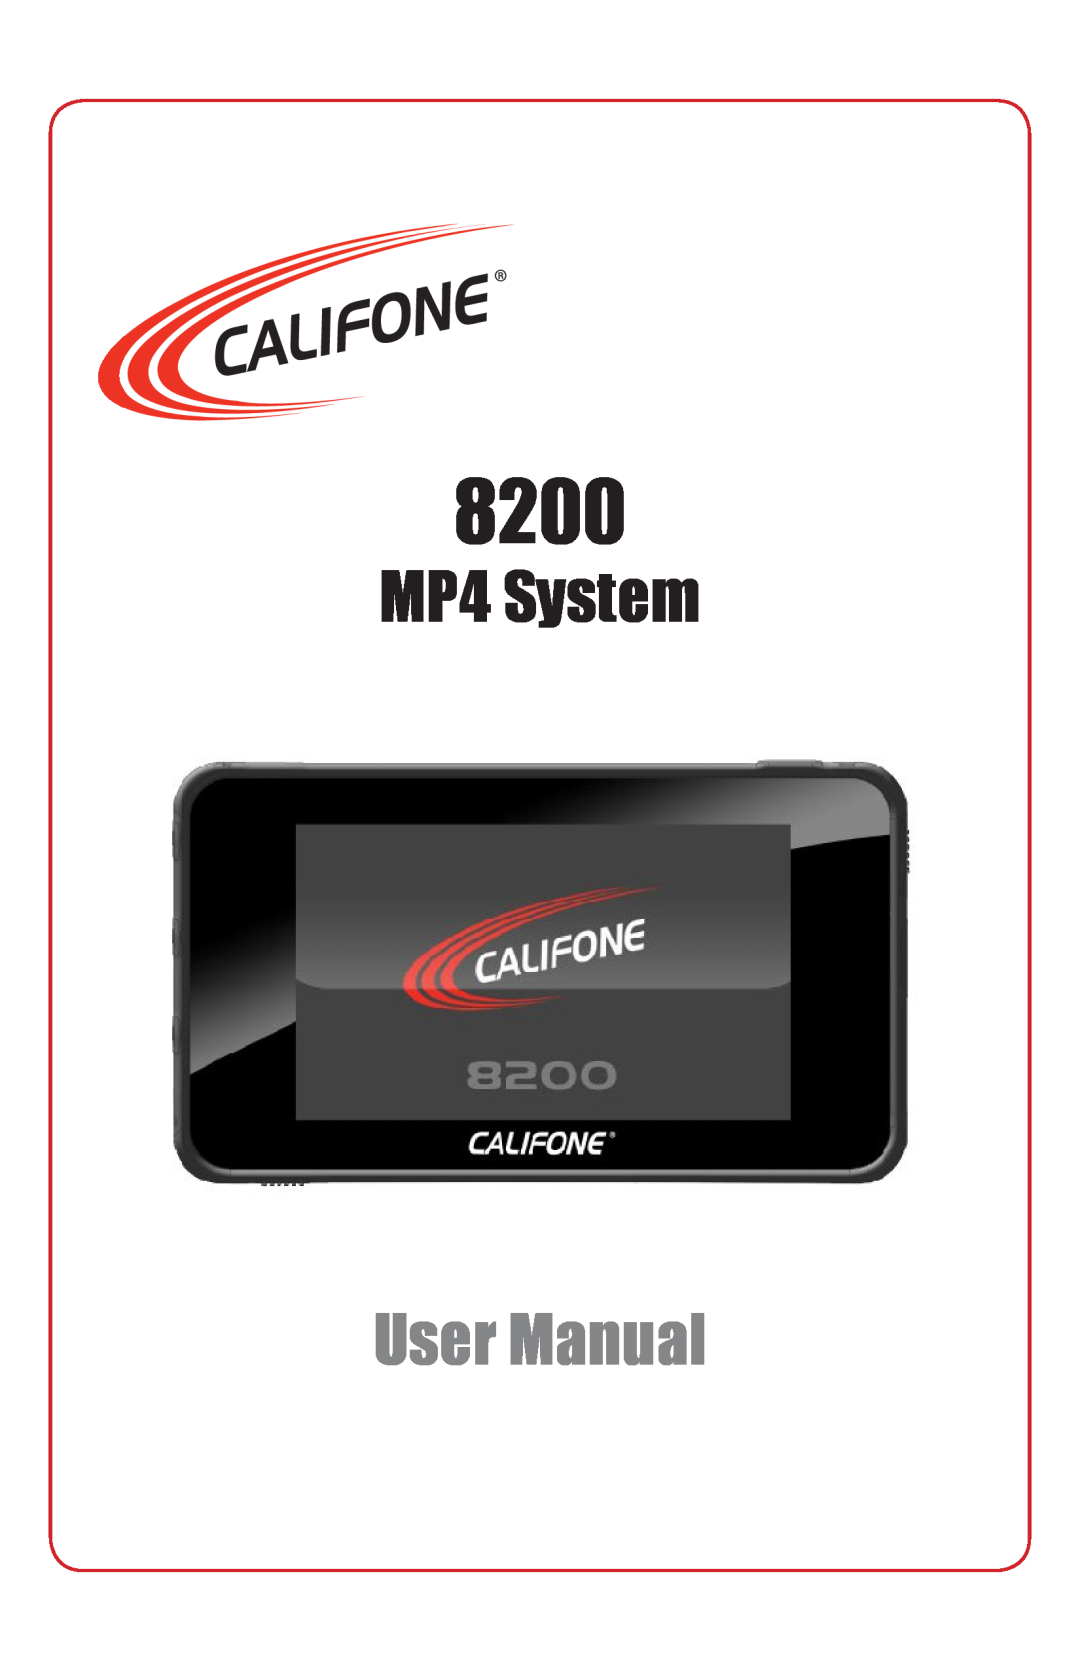 Califone 8200 user manual MP4 System, User Manual 